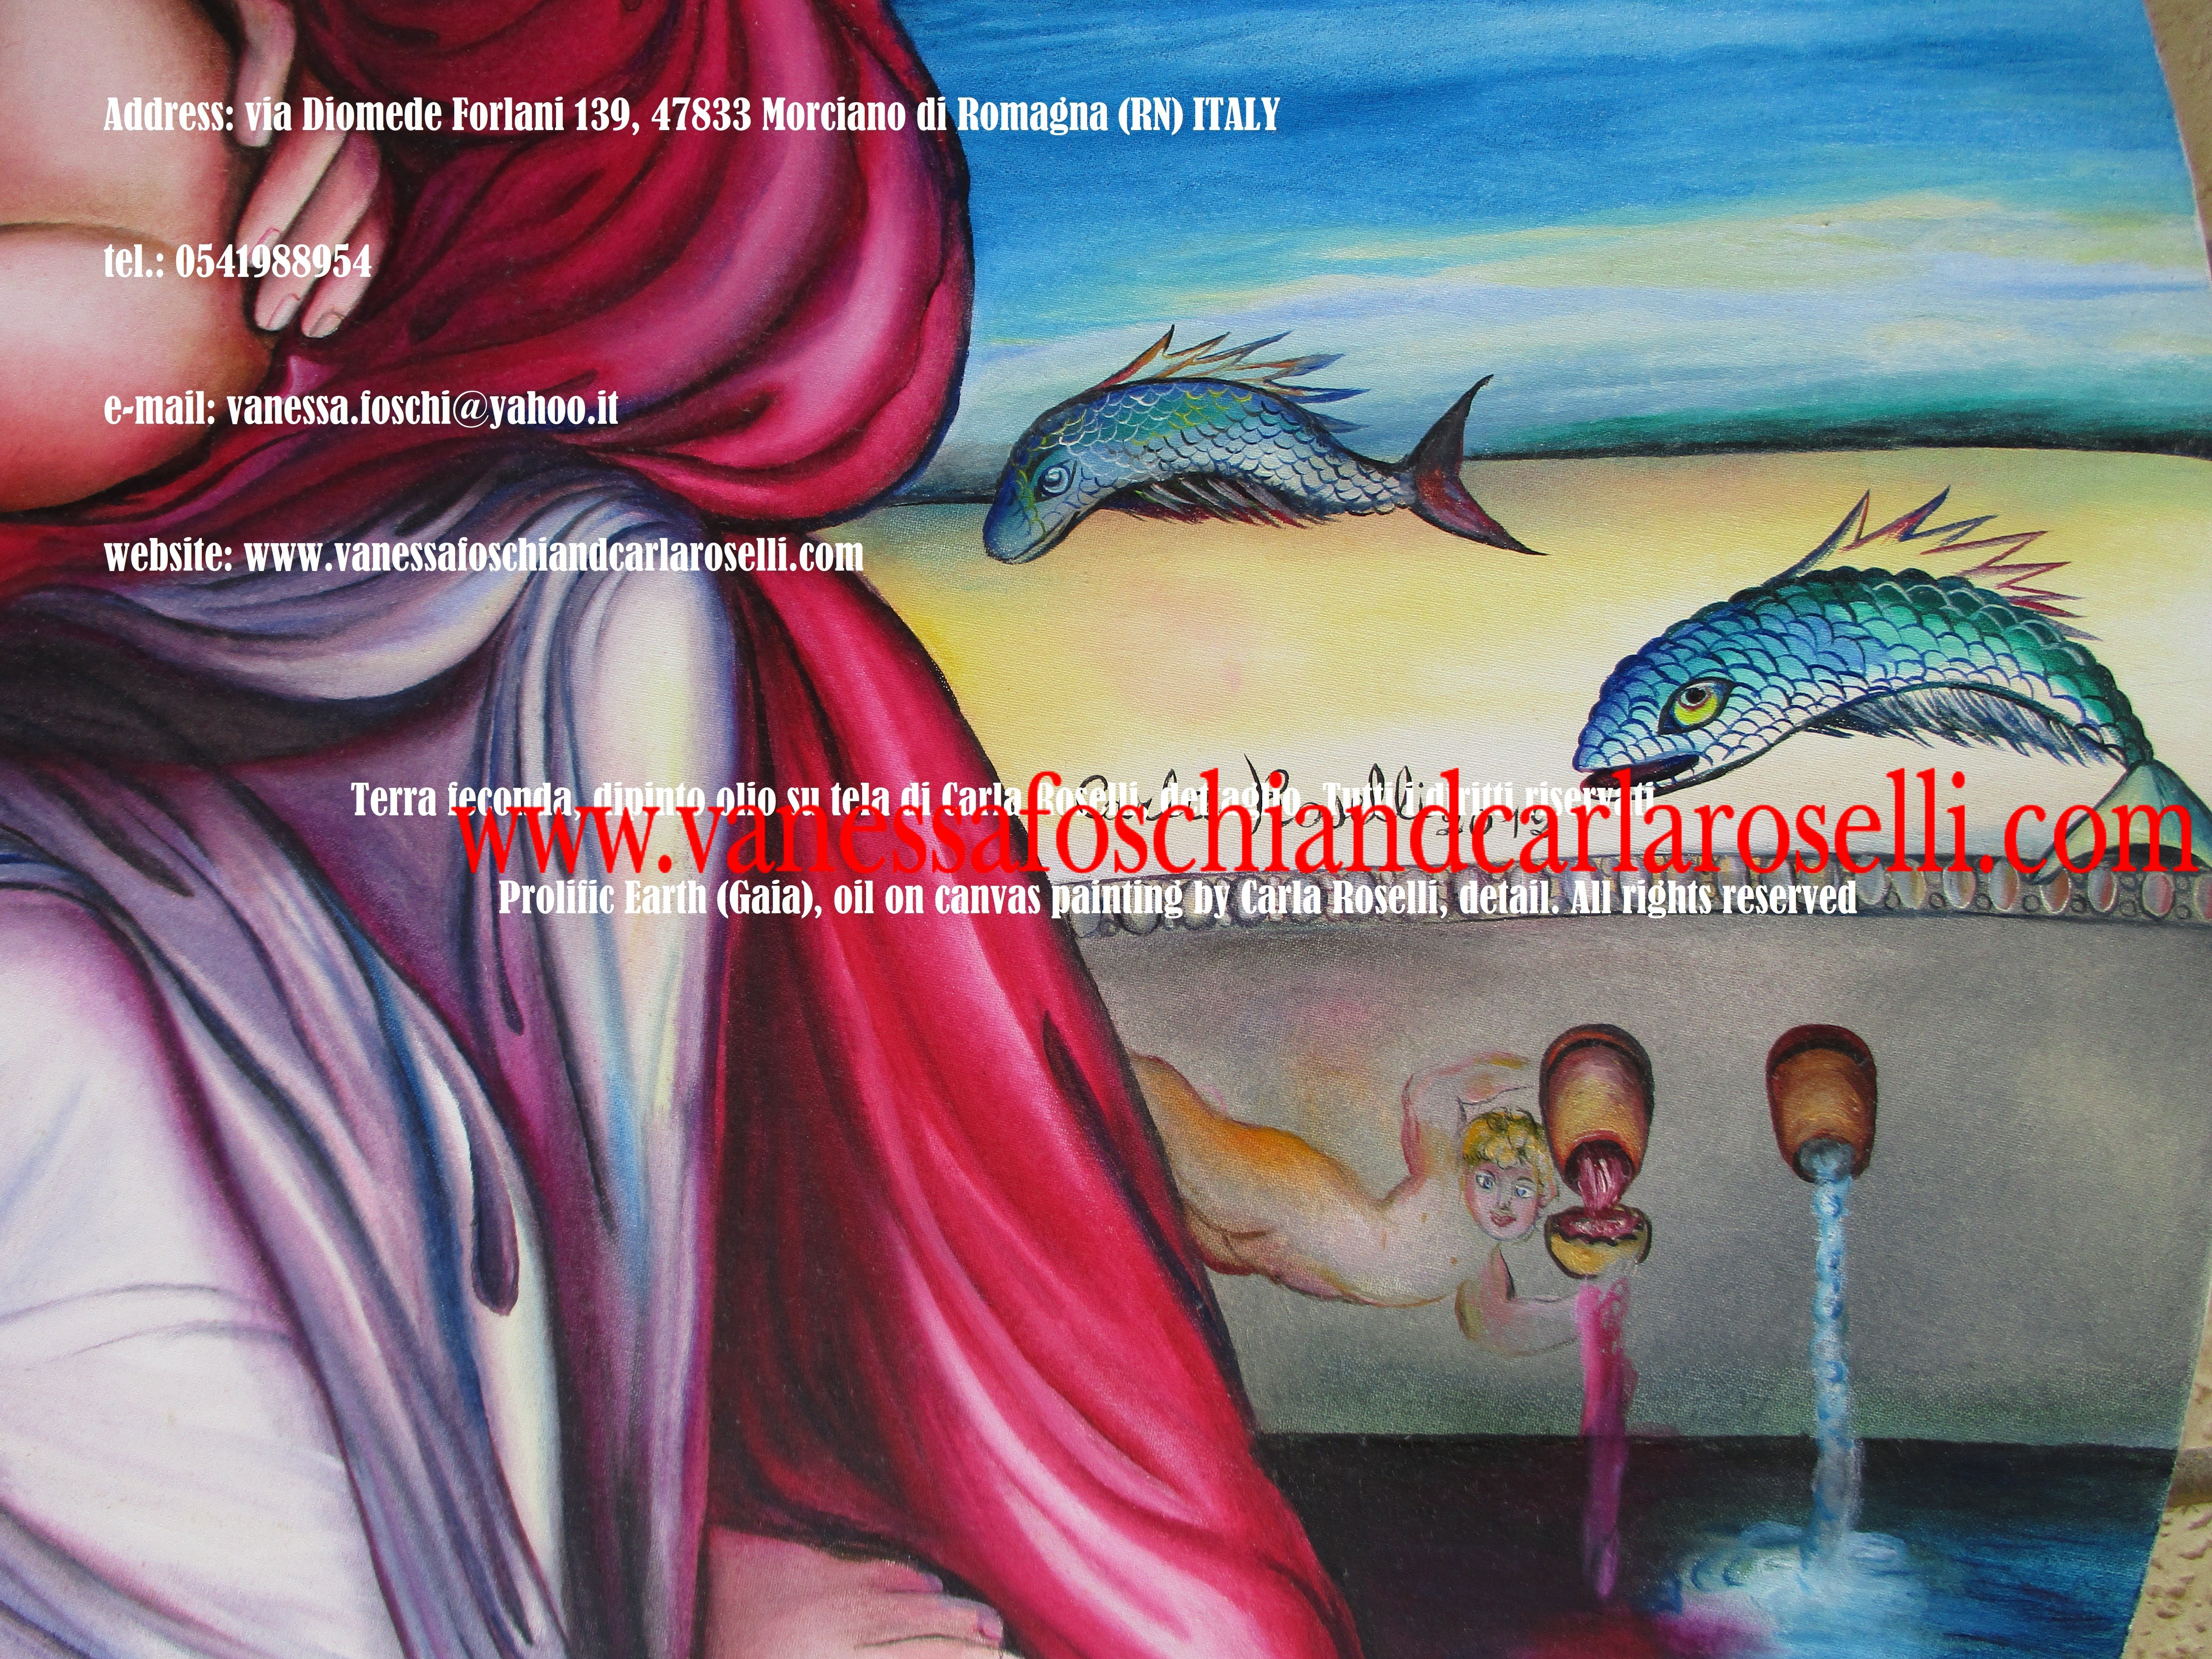 Gaia, Terra feconda, dipinto olio su tela di Carla Roselli, pesci volanti, dal fregio sgorgano acqua e vino